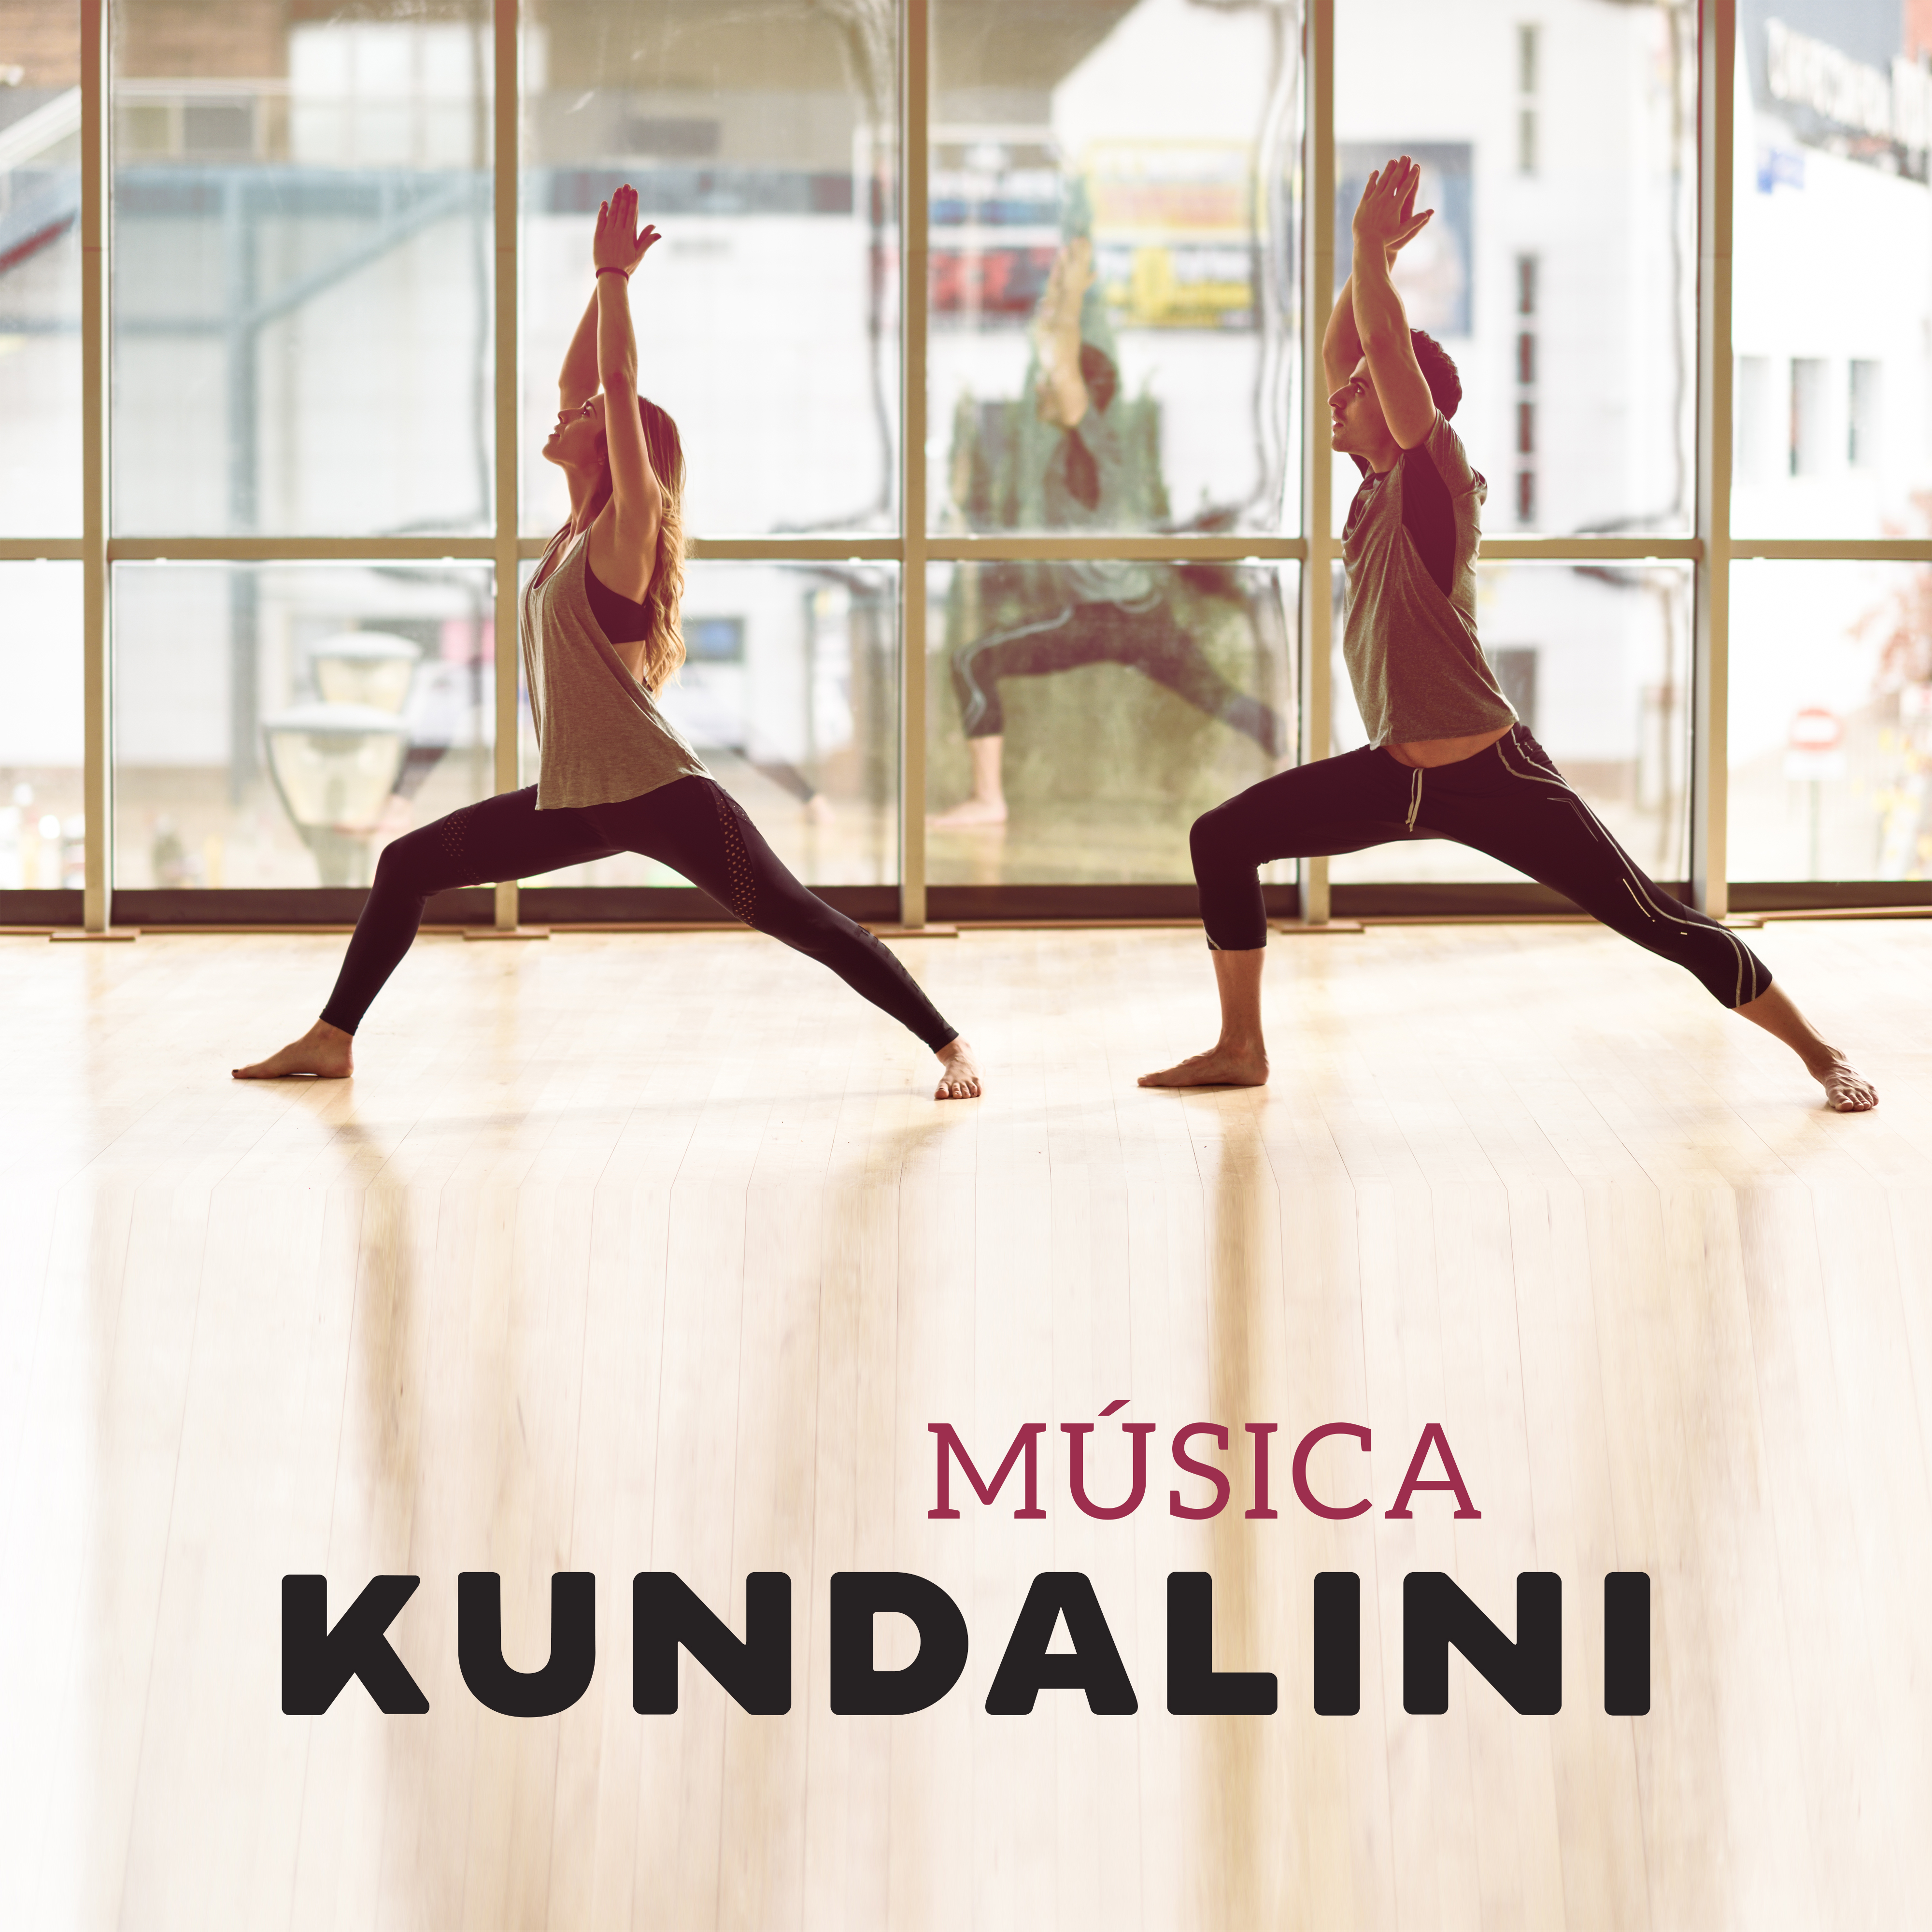 Música Kundalini